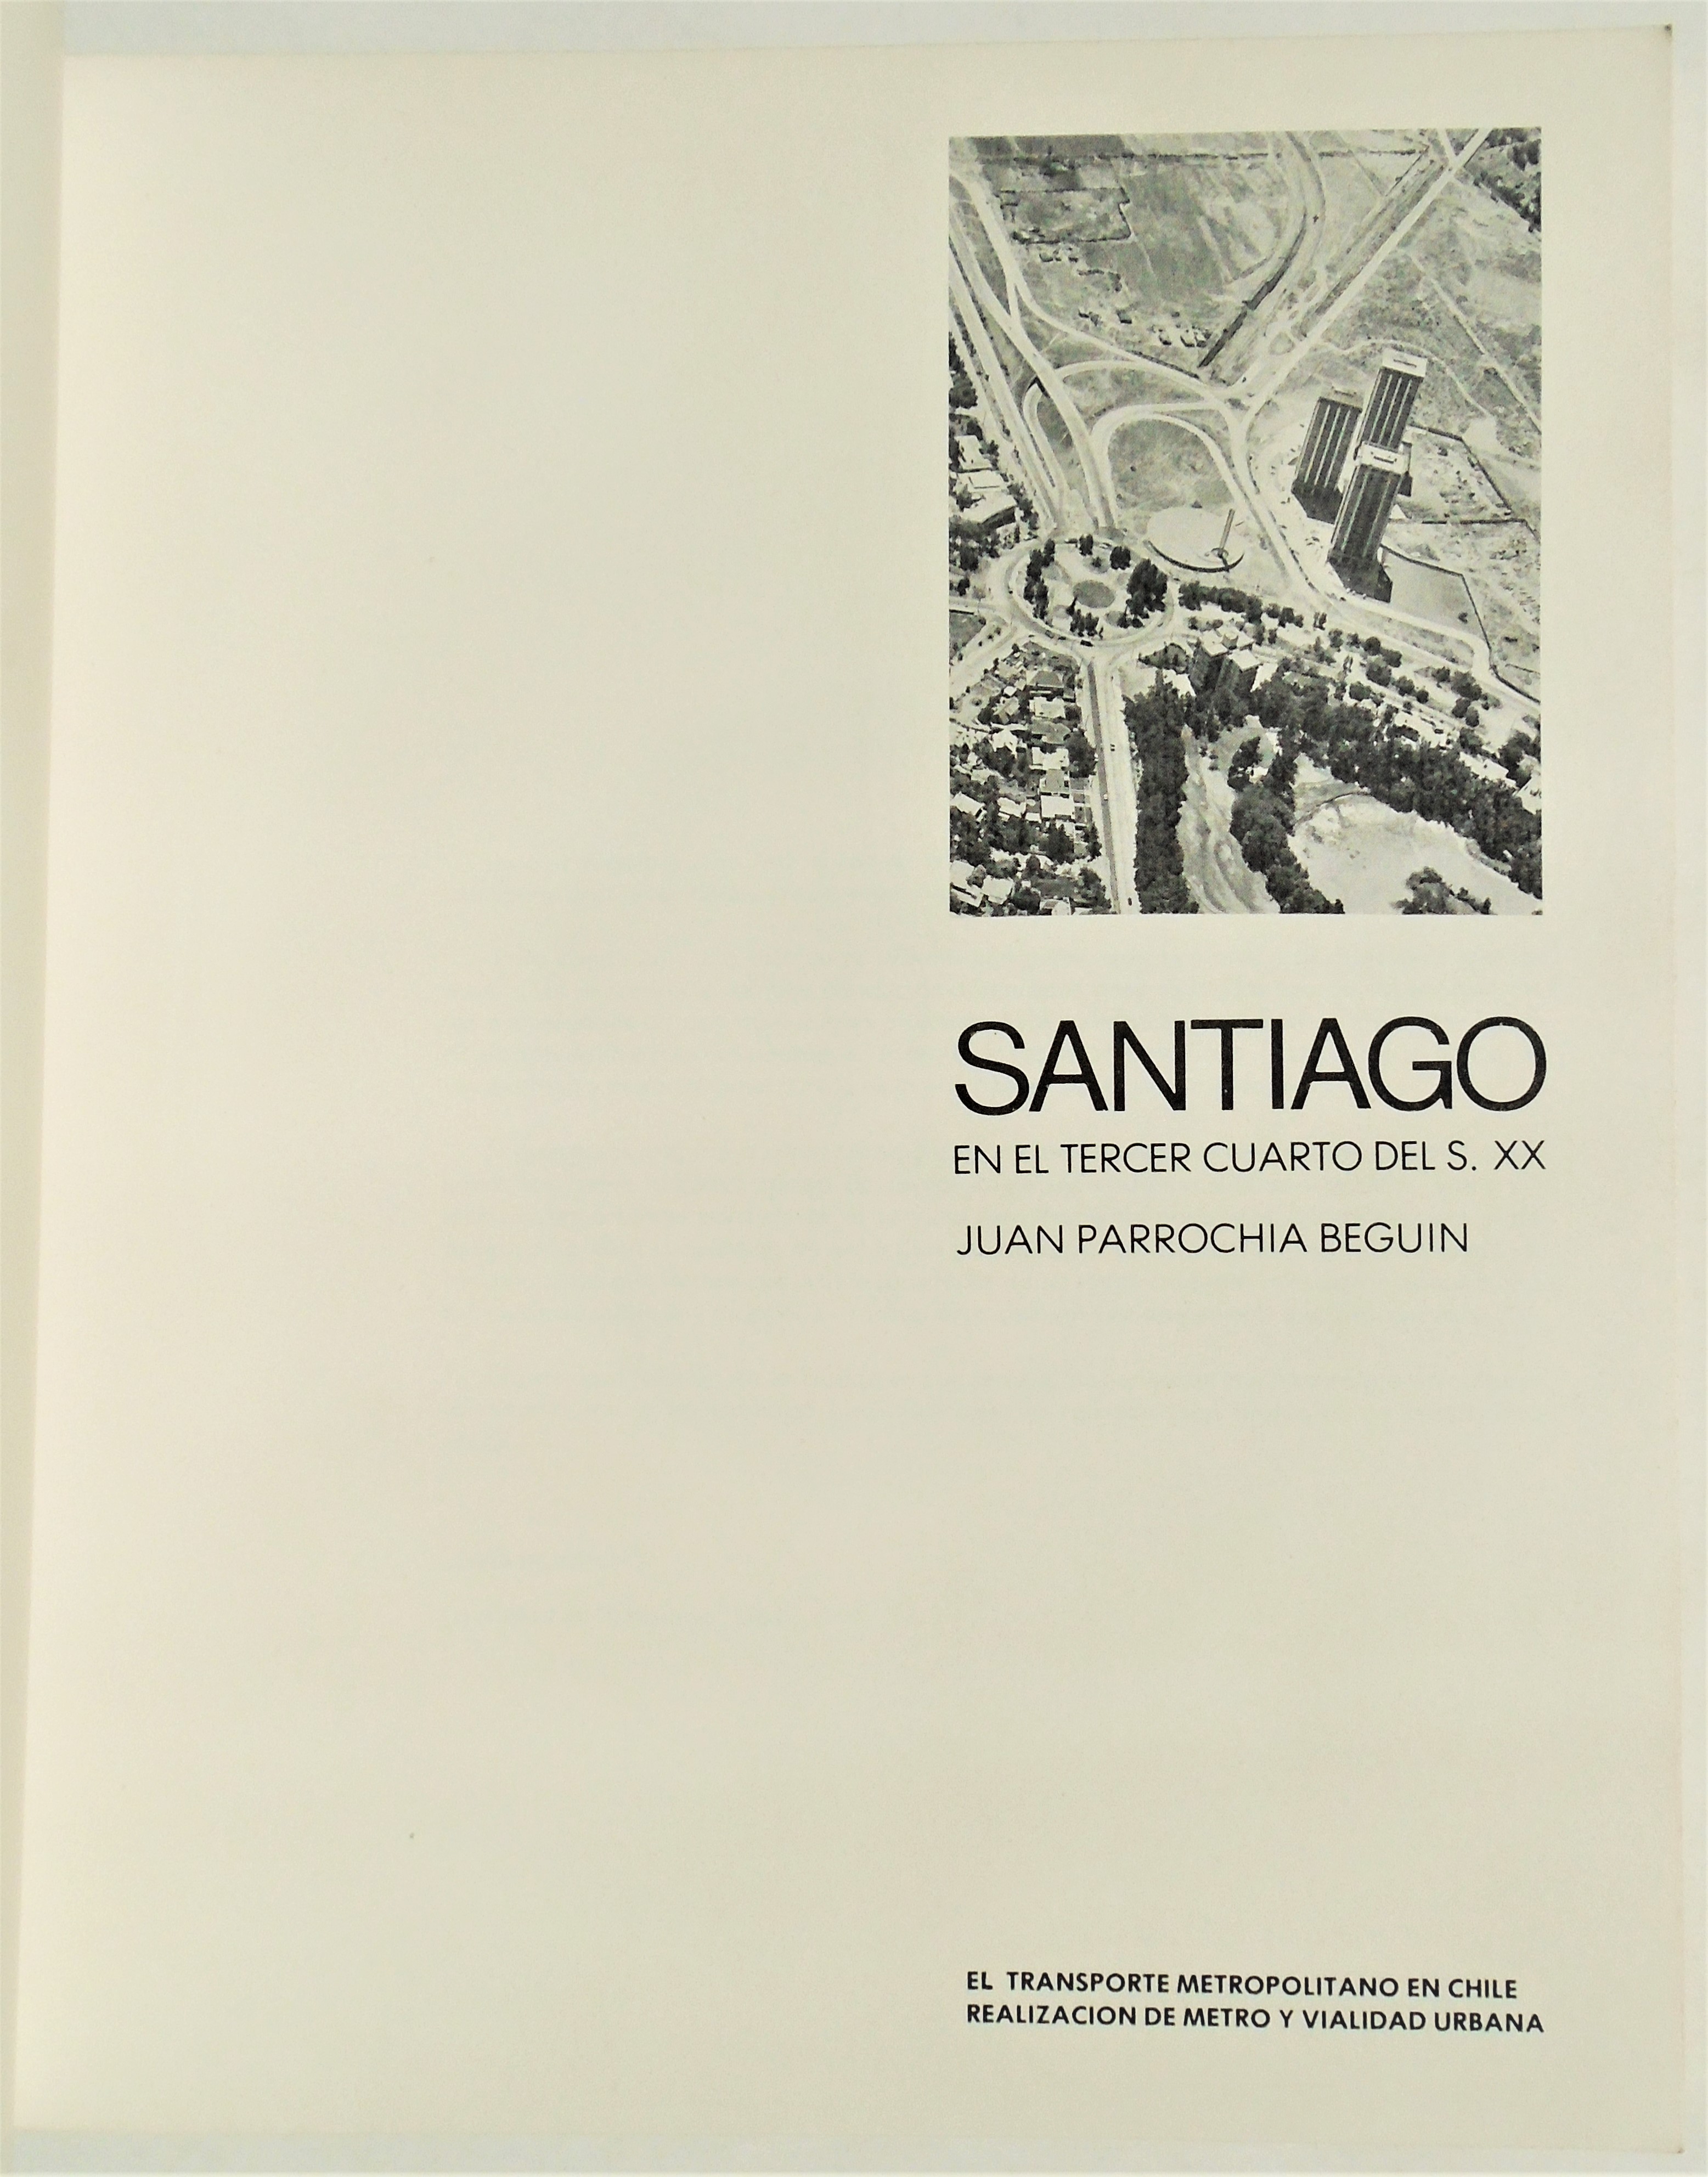 Juan Parrochia Begun - Santiago en el tercer cuarto del S. XX